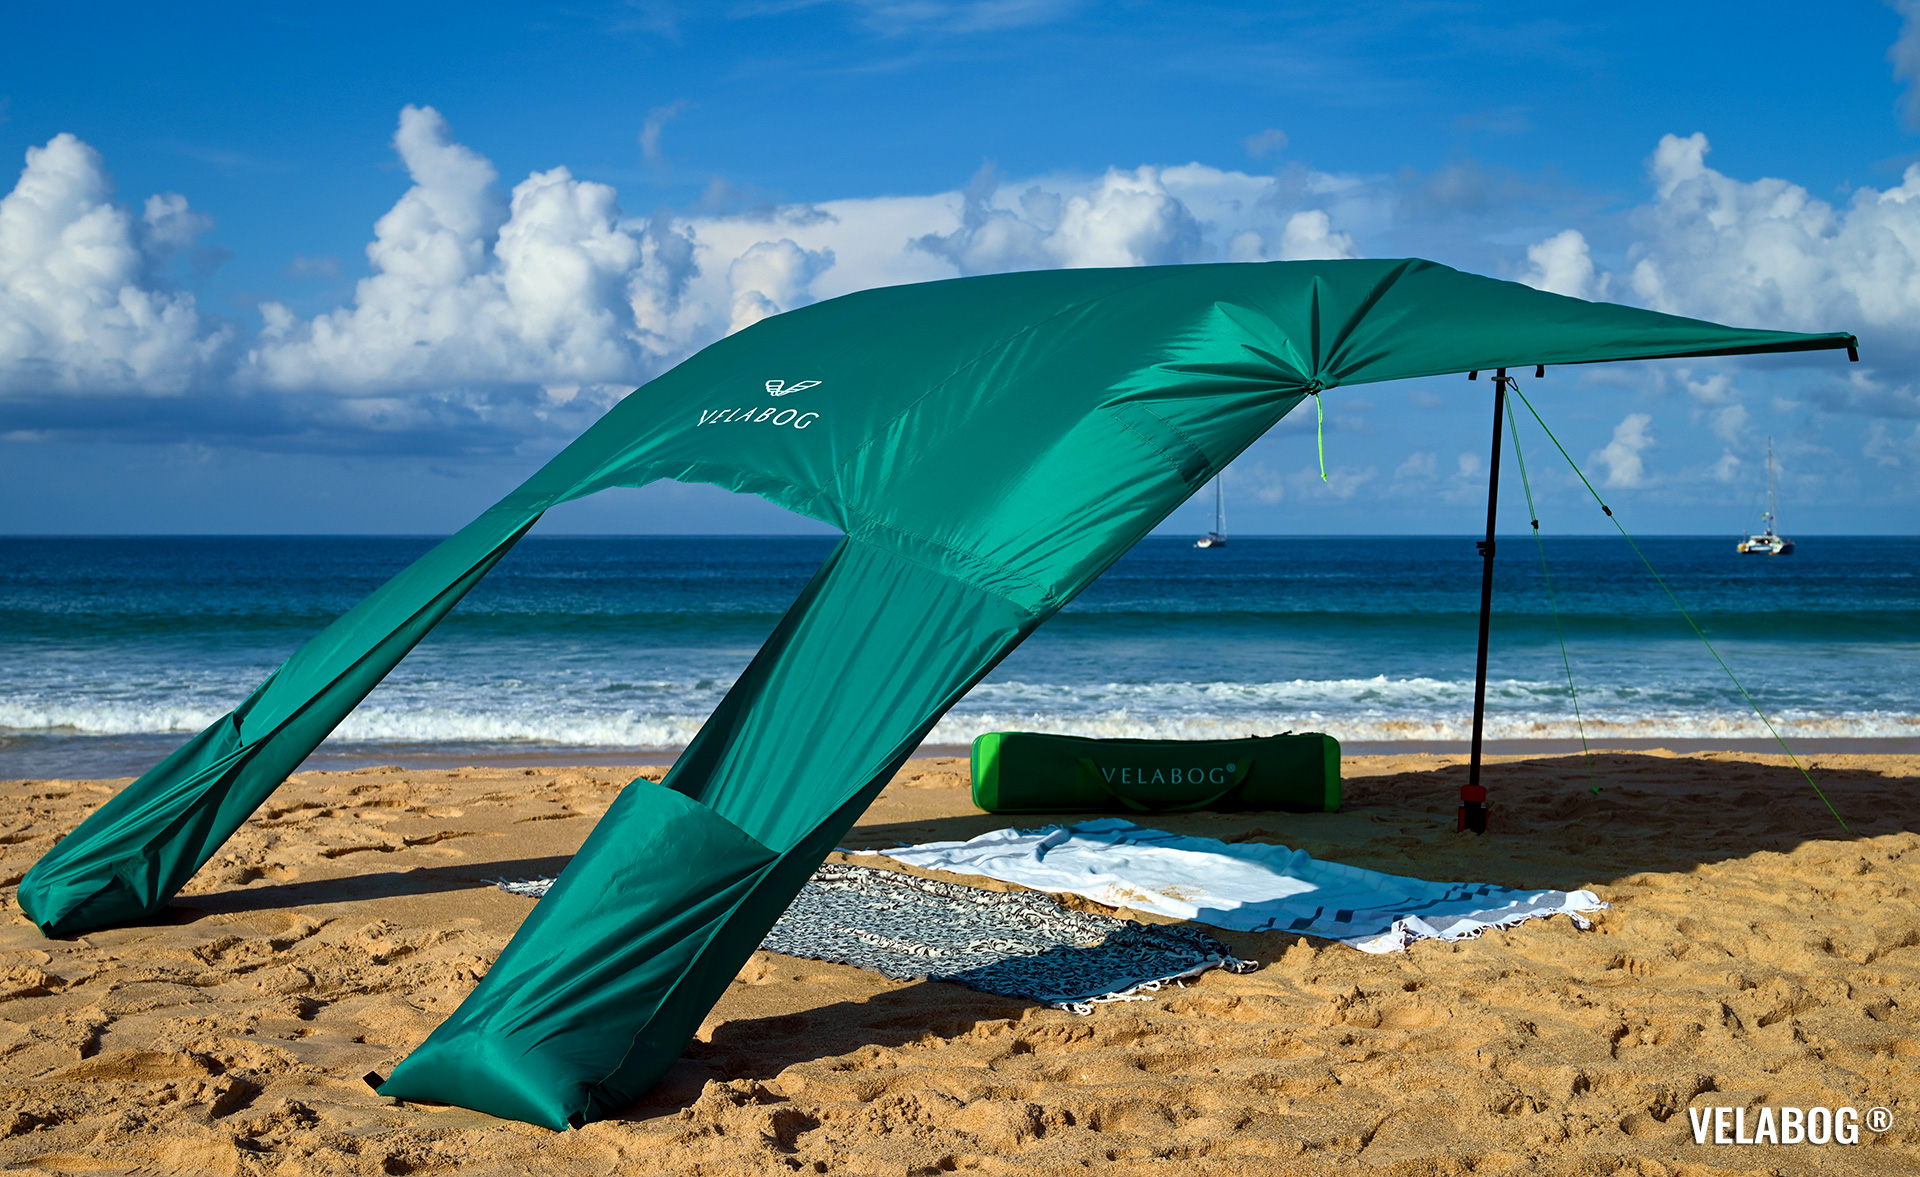 Strand Sonnensegel Strandzelt Velabog Breeze. Aufbauoption A - leichter bis starker Wind. Farbe: grün. Bester Sonnenschutz Strand. | Velabog ©